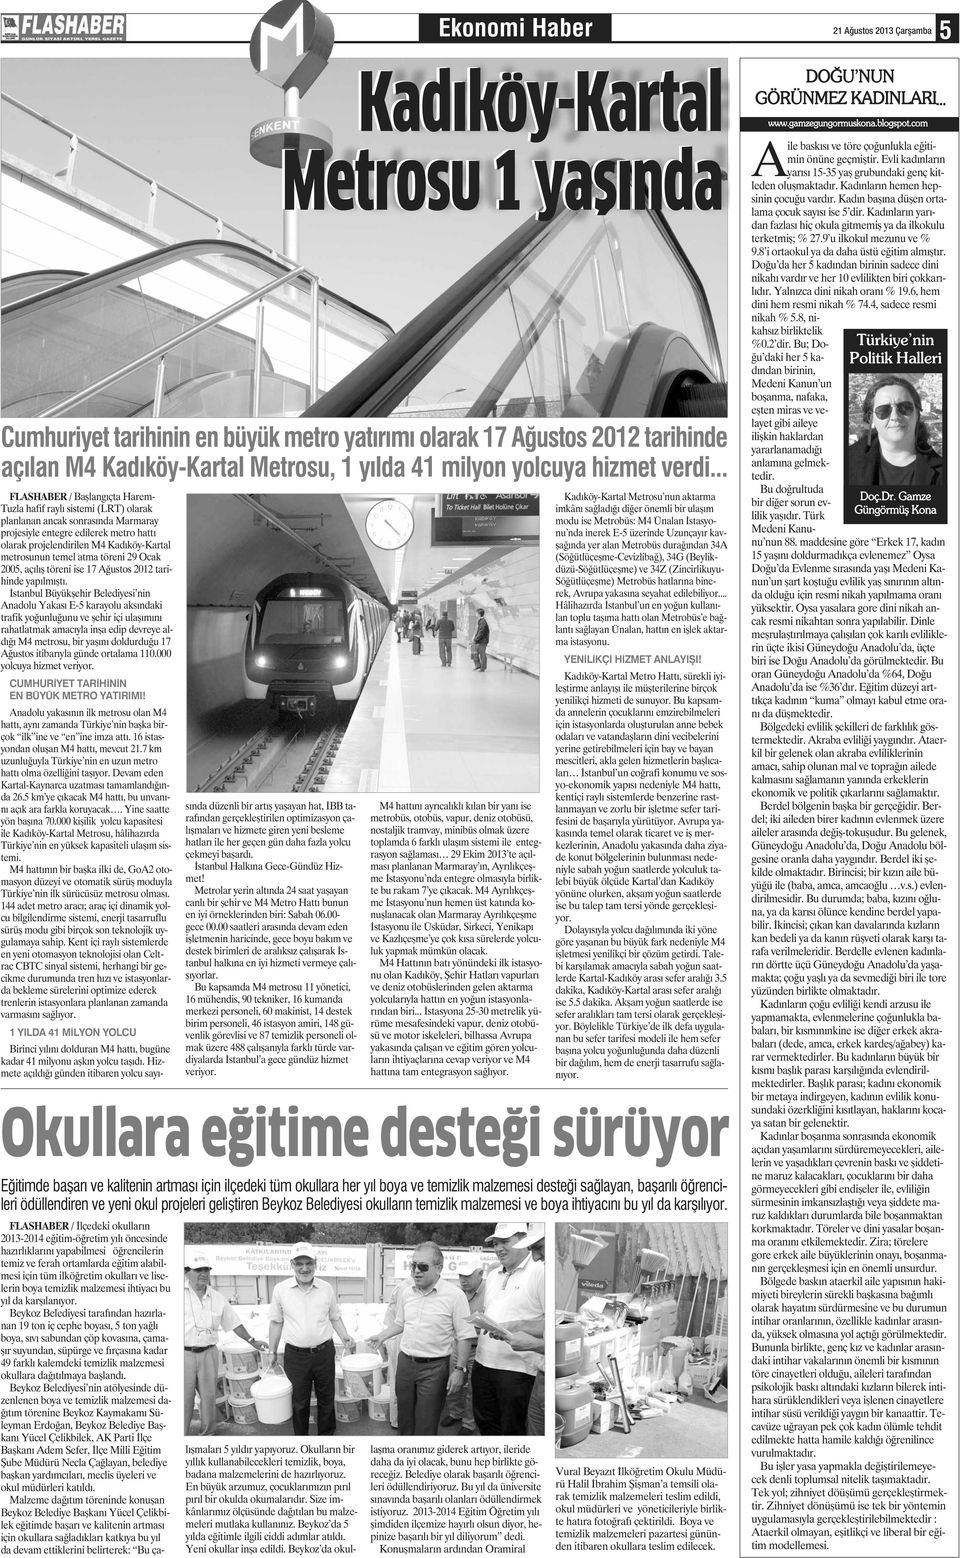 İstanbul Büyükşehir Belediyesi nin Anadolu Yakası E-5 karayolu aksındaki trafik yoğunluğunu ve şehir içi ulaşımını rahatlatmak amacıyla inşa edip devreye aldığı M4 metrosu, bir yaşını doldurduğu 17